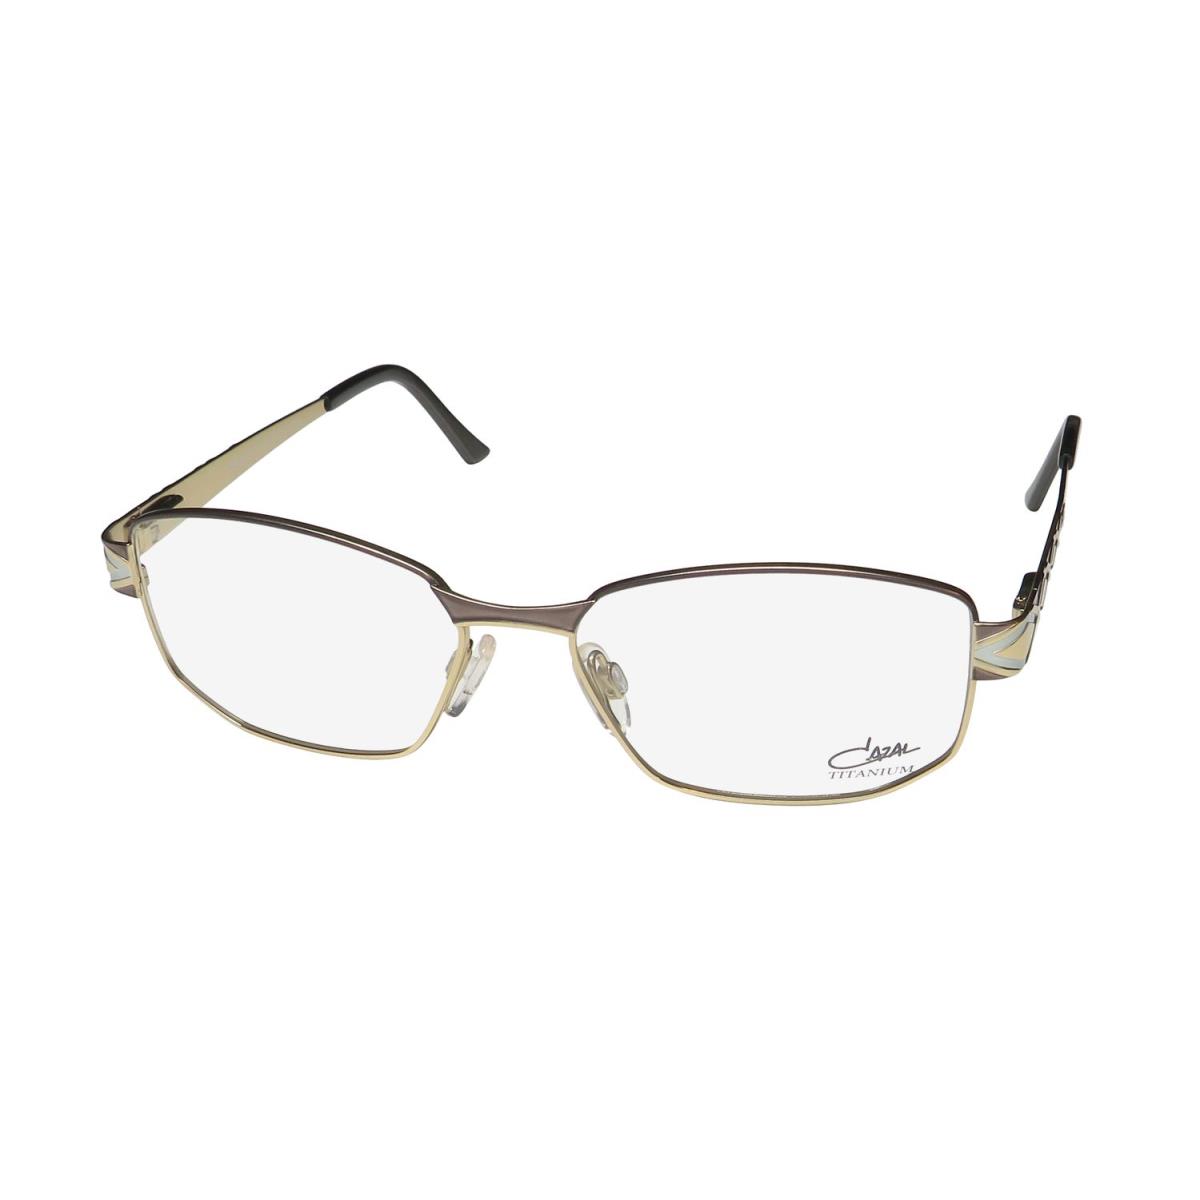 Cazal 1251 Titanium Imported From Germany Sophisticated Eyeglass Frame/eyewear Anthracite / Gold